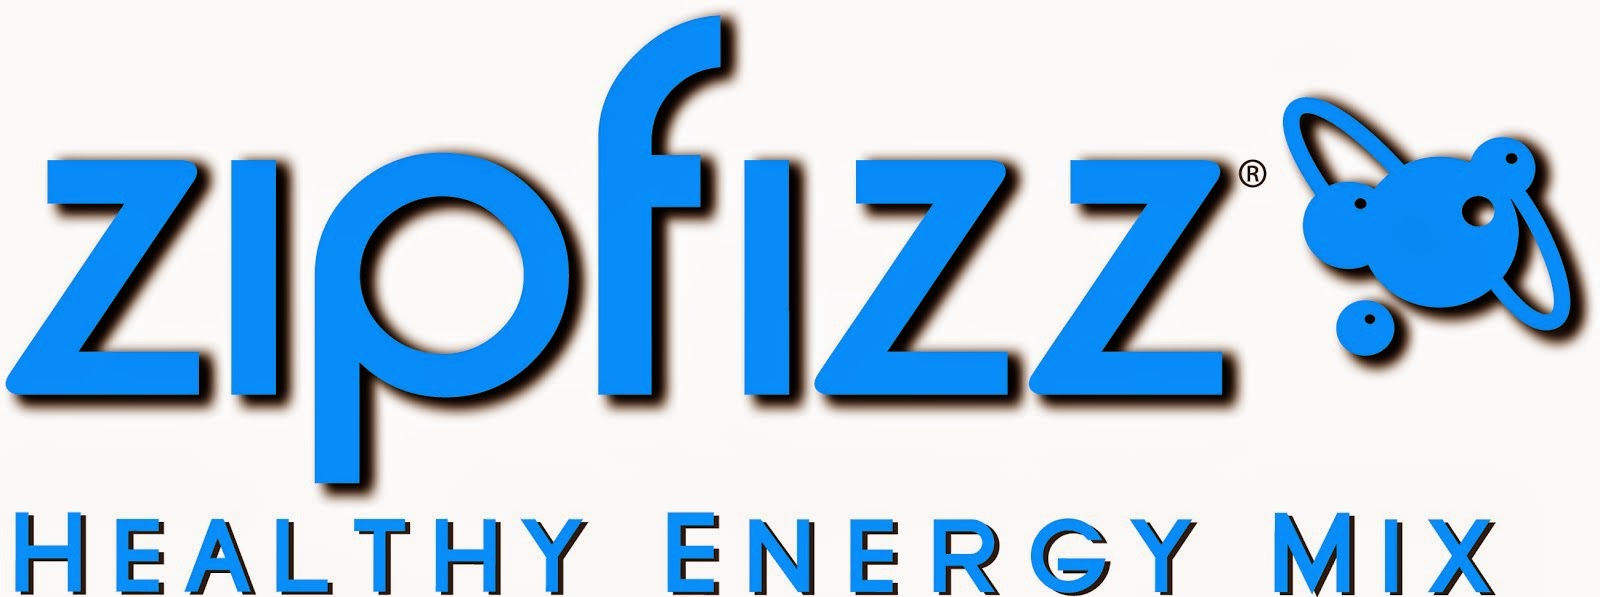 Zipfizz Healthy Energy